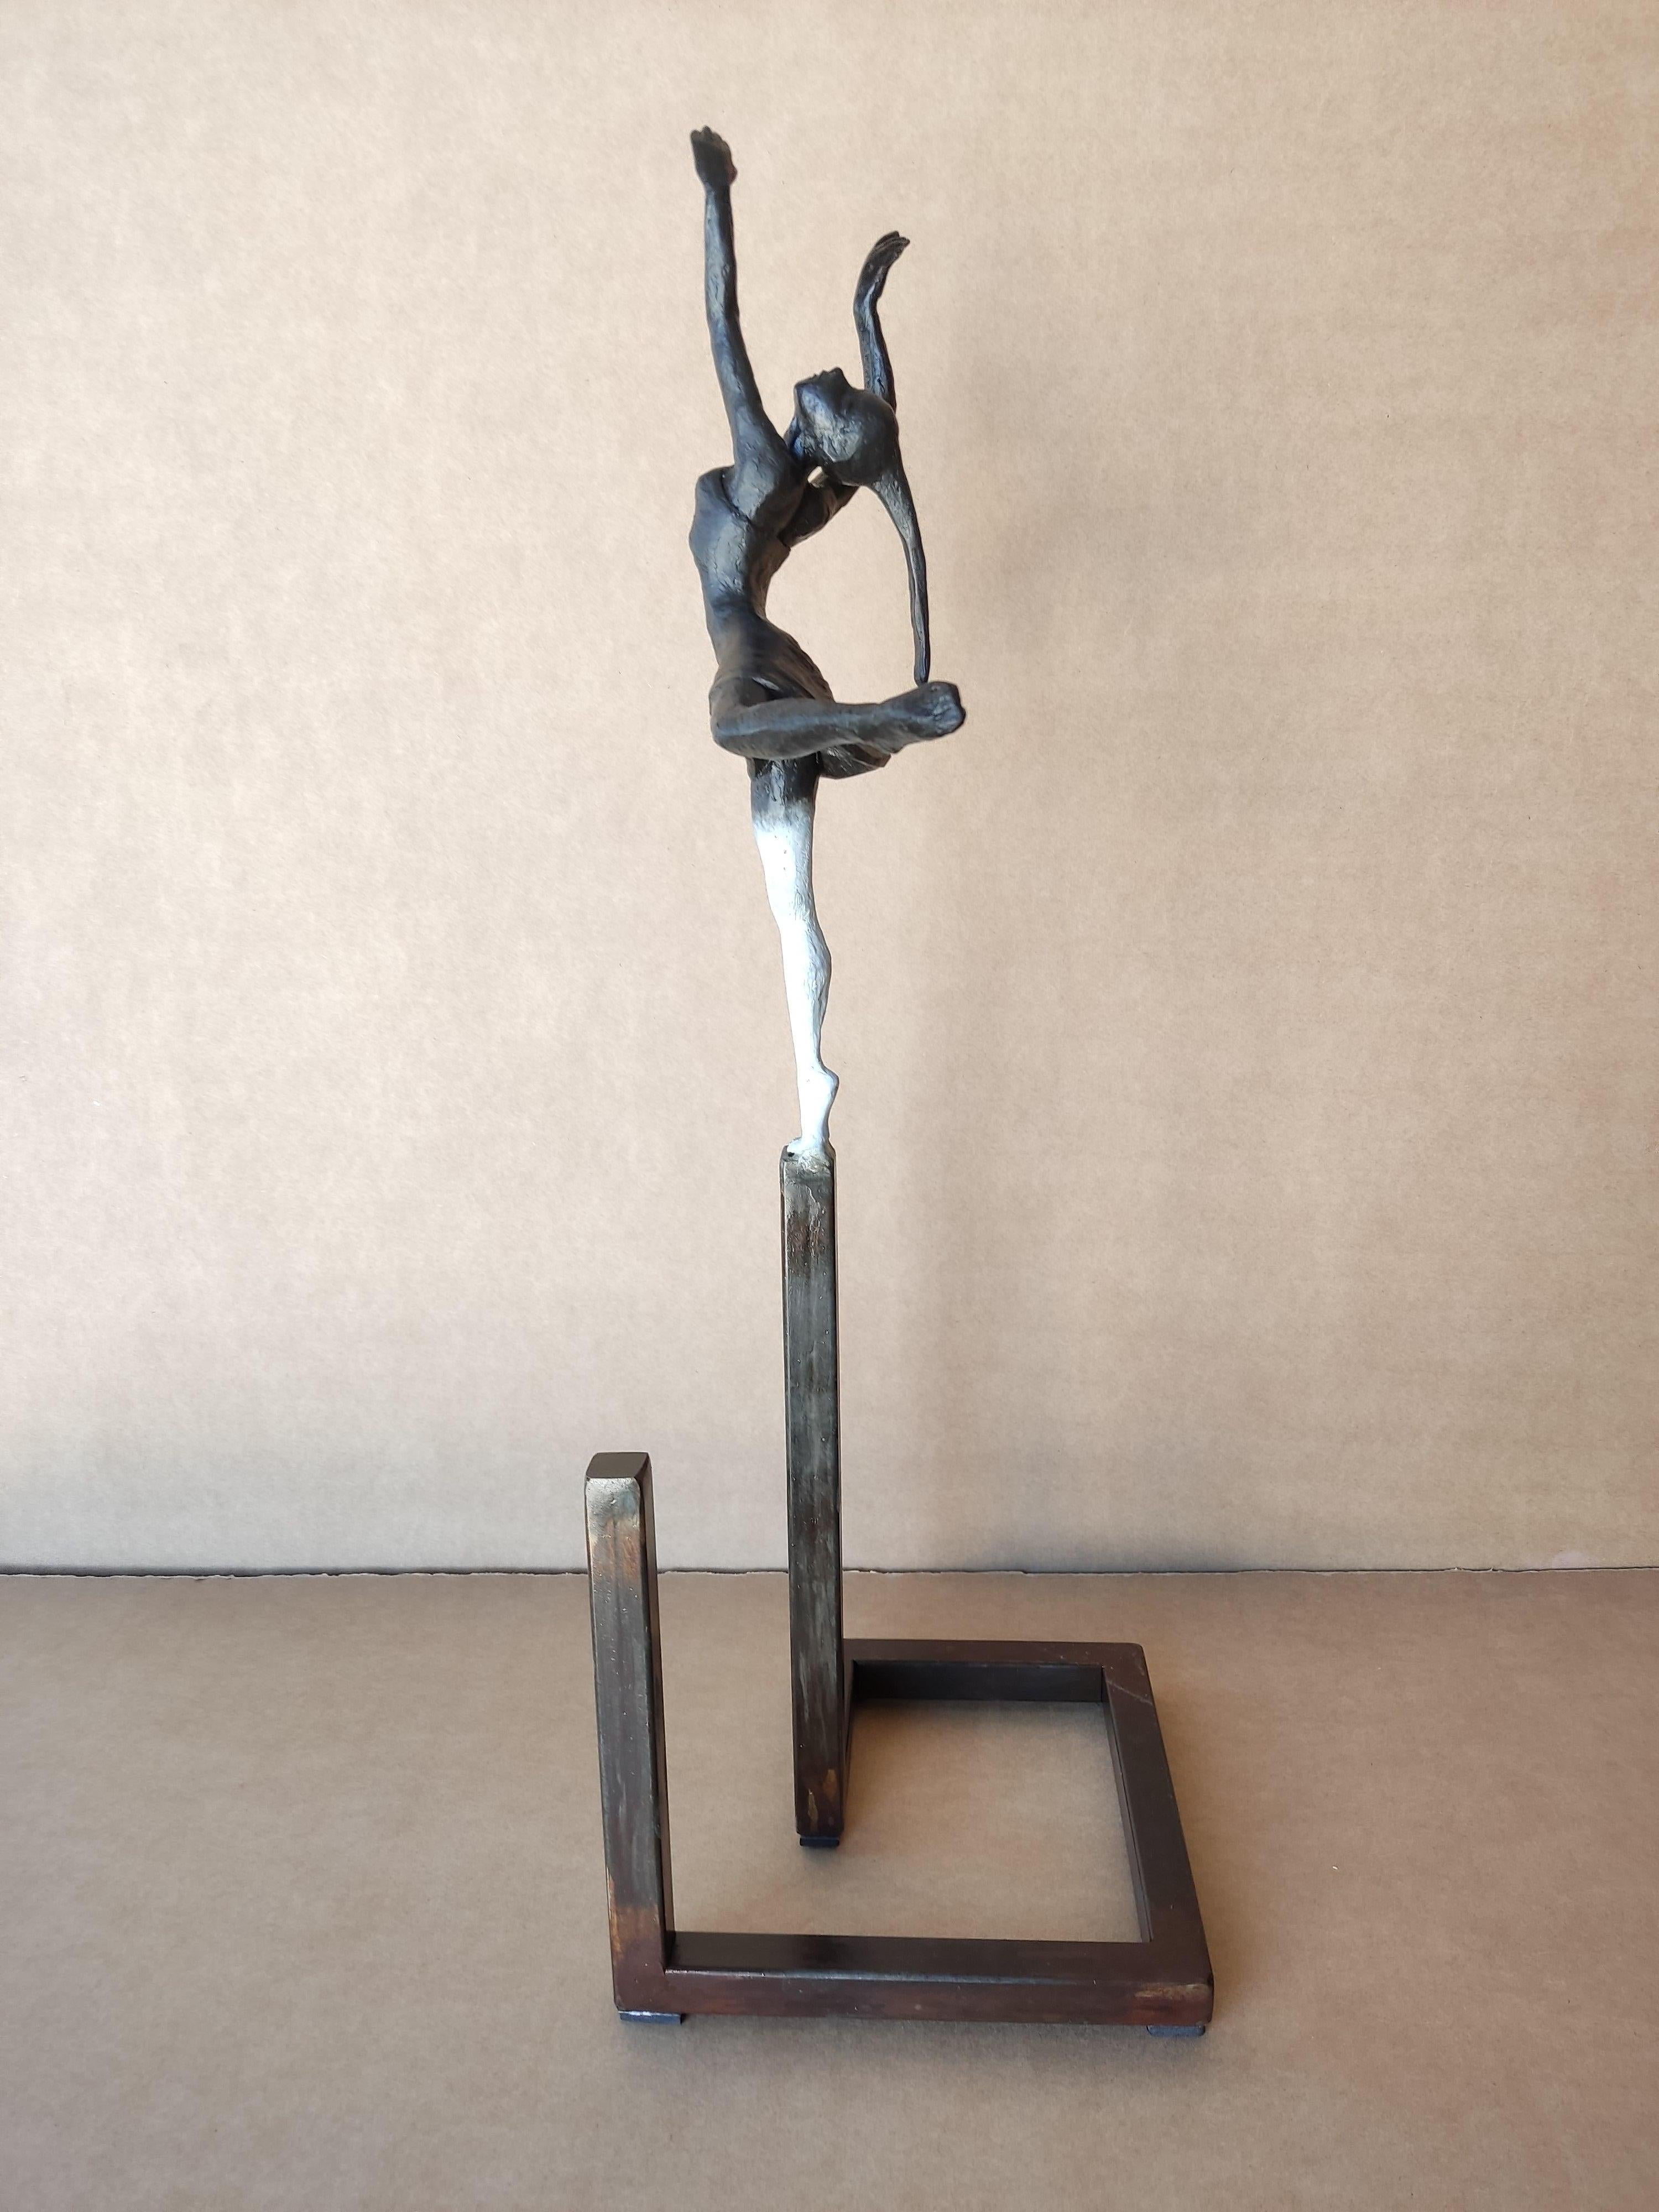 Joan Artigas Planas Figurative Sculpture - "Alicia Graf 22" contemporary bronze table sculpture figurative dancing elegance